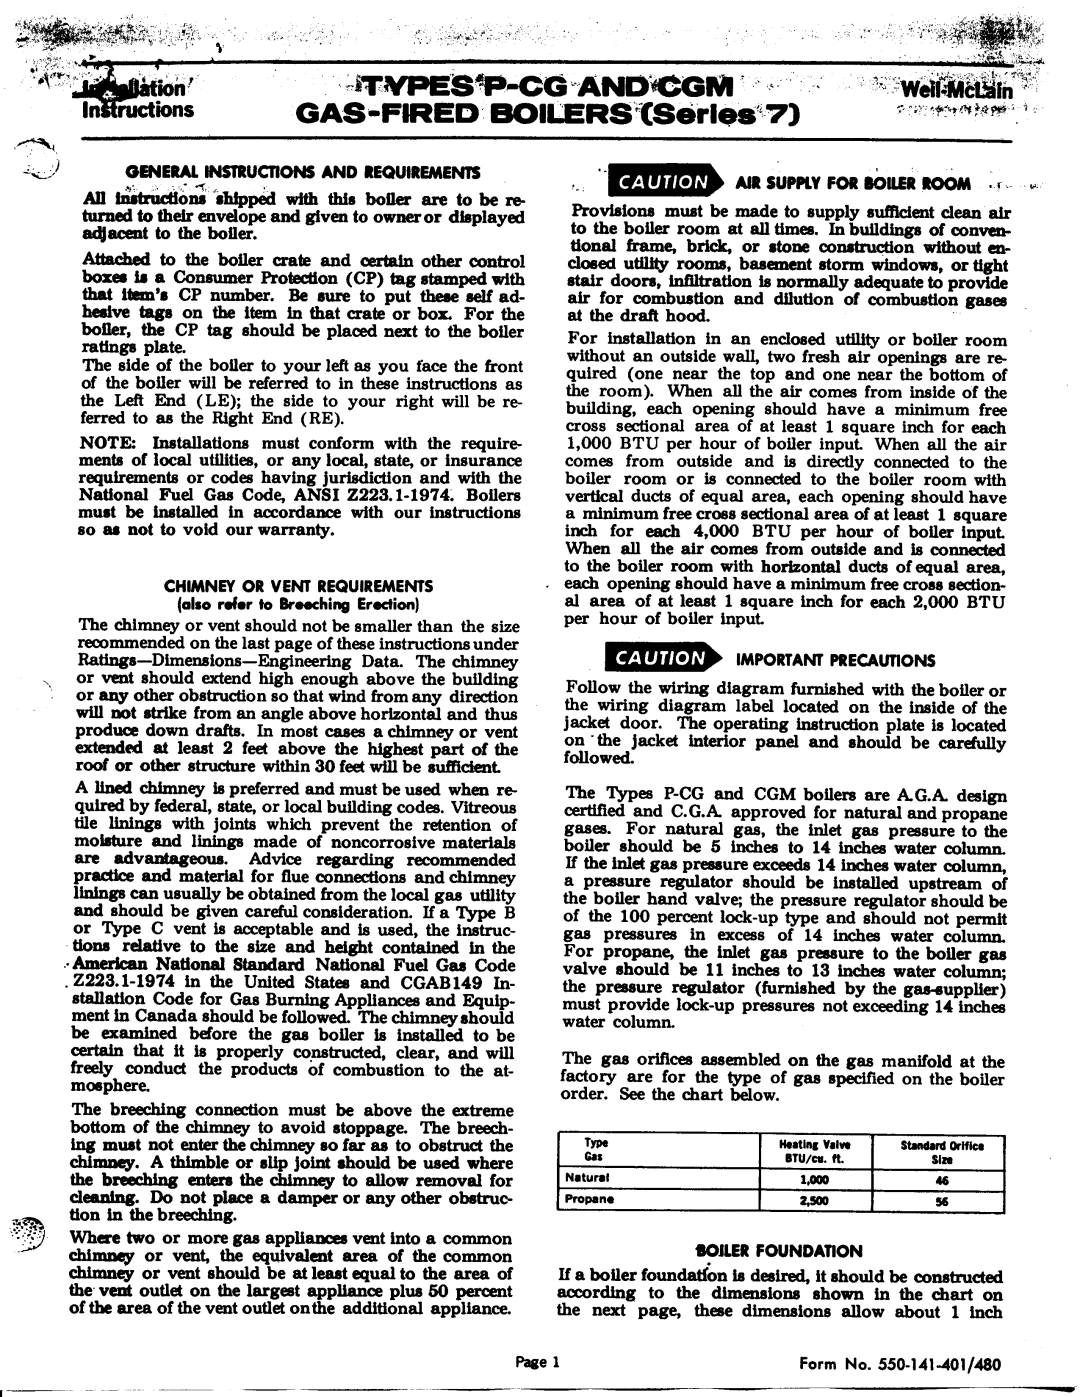 Weil-McLain CGM (Series 7), PCG (Series 7) manual 